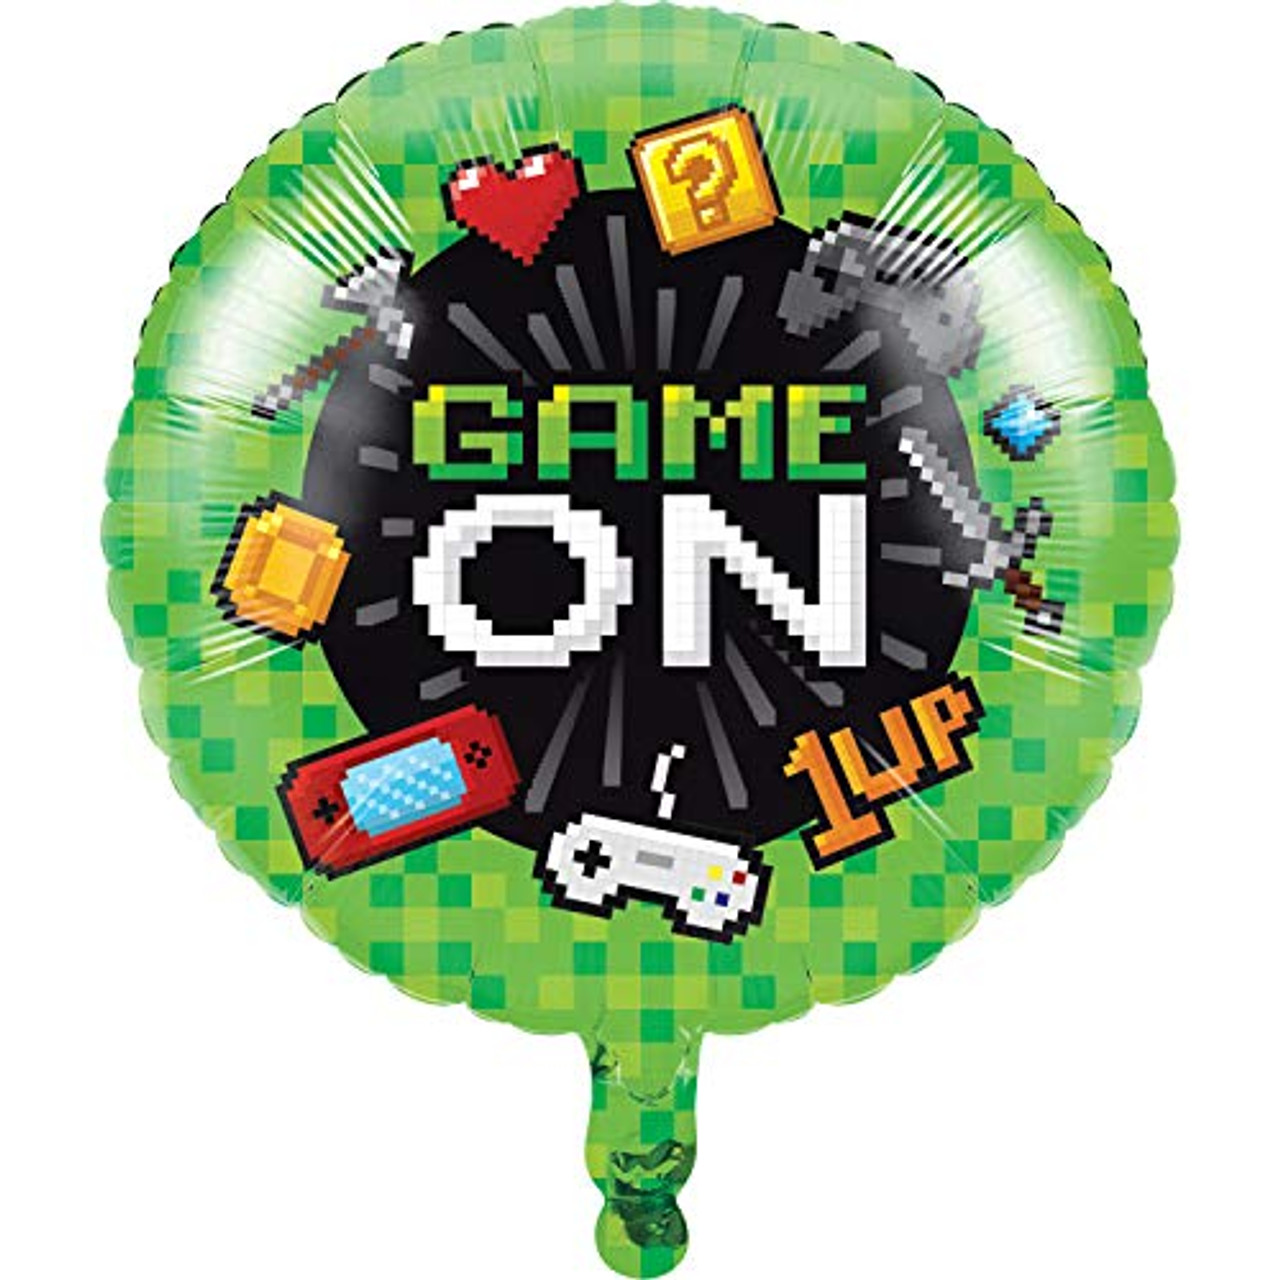 18” Game On Mylar balloon